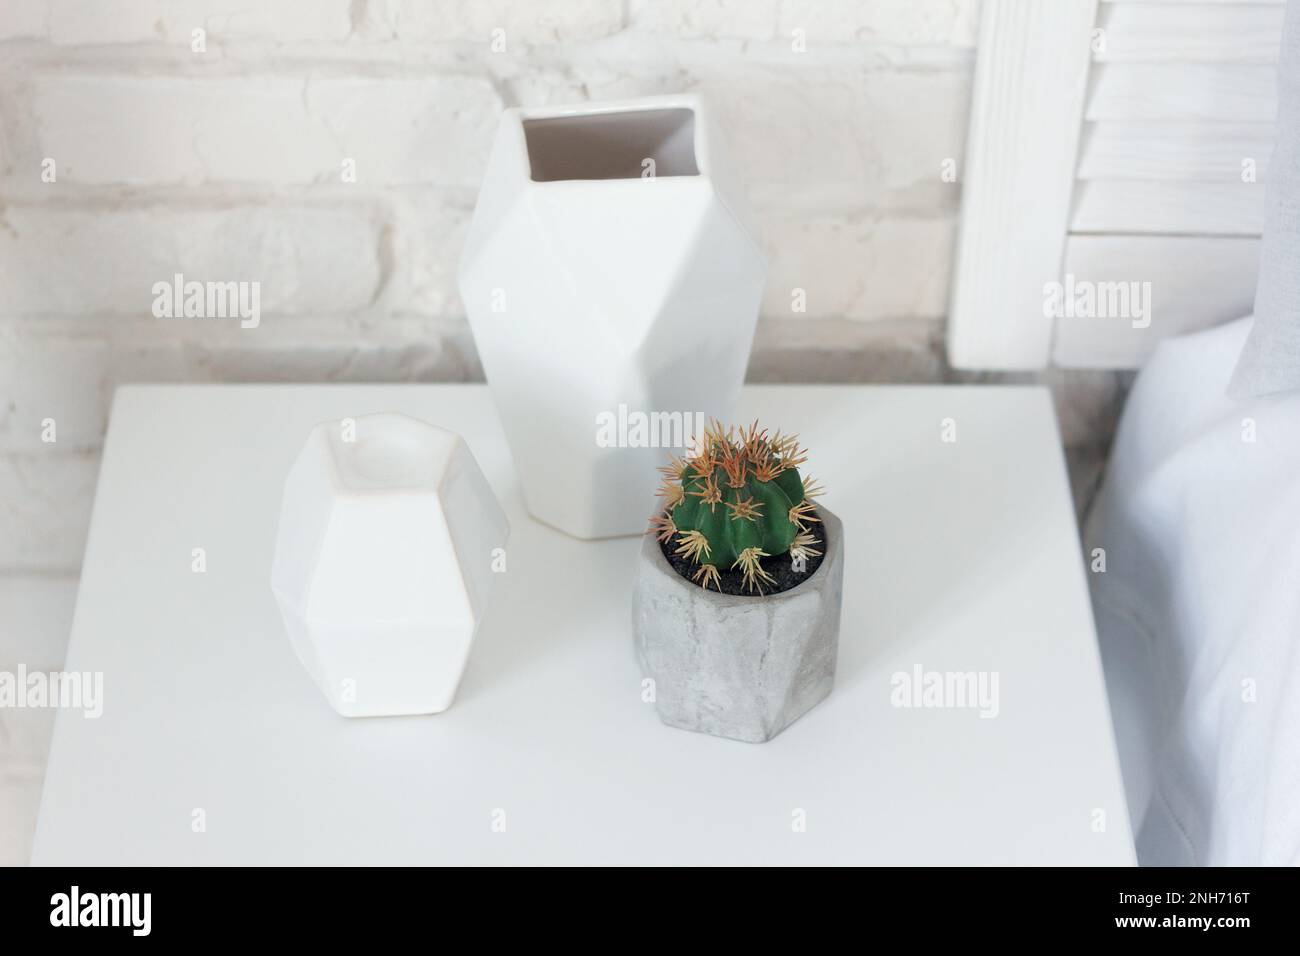 Una pianta della famiglia dei cactus, piantata in un vaso grigio, si trova su un comodino, accanto ad un candelabro e ad un vaso. Questi articoli combinino bene w Foto Stock